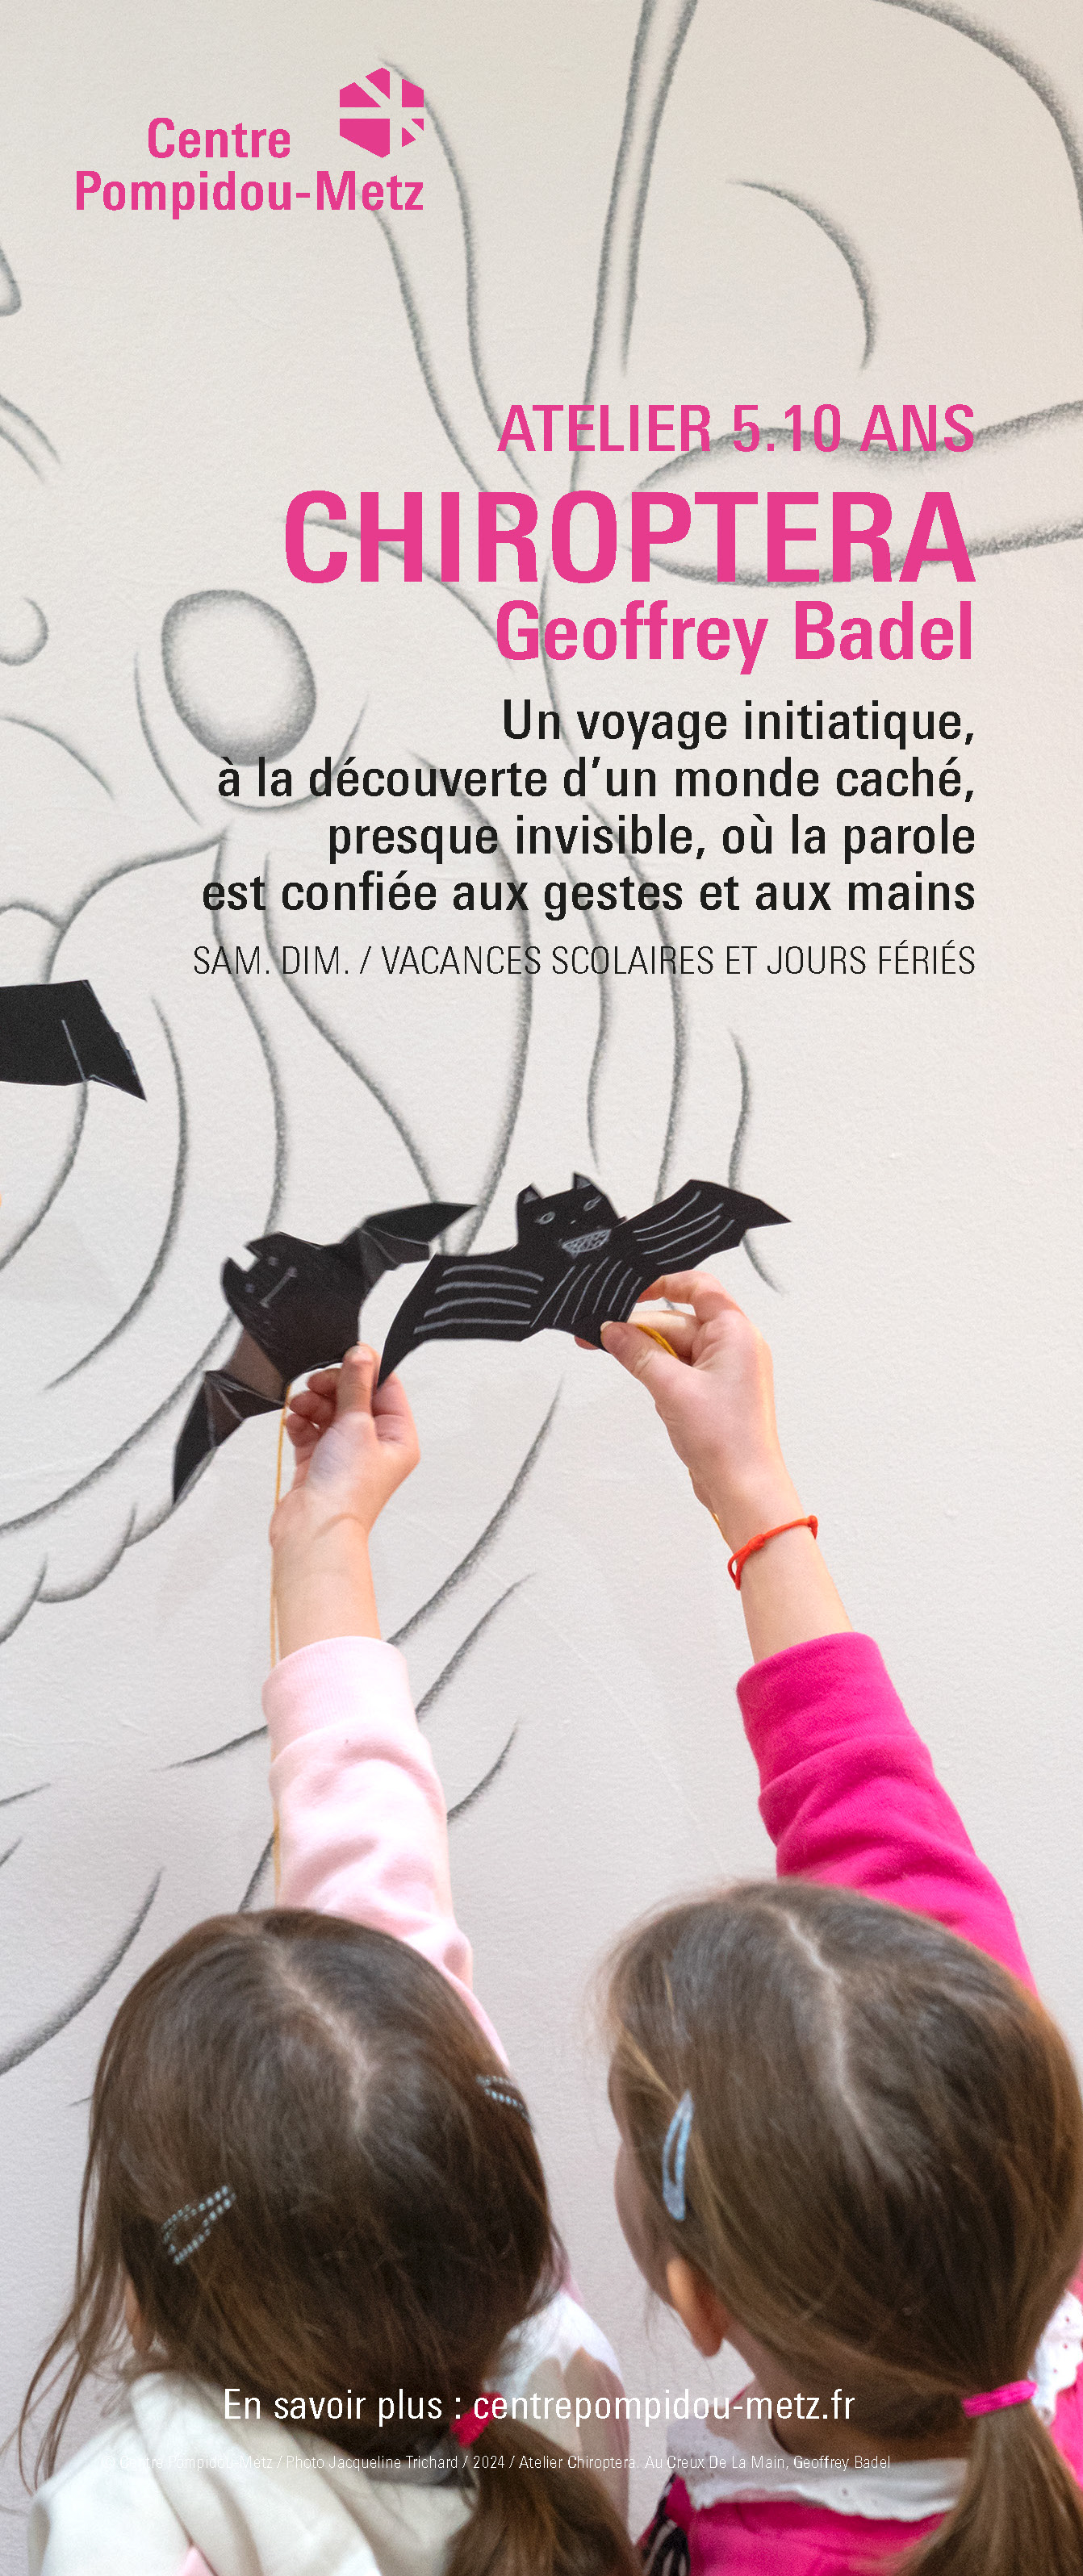 Ateliers pour enfants au Centre Pompidou-Metz